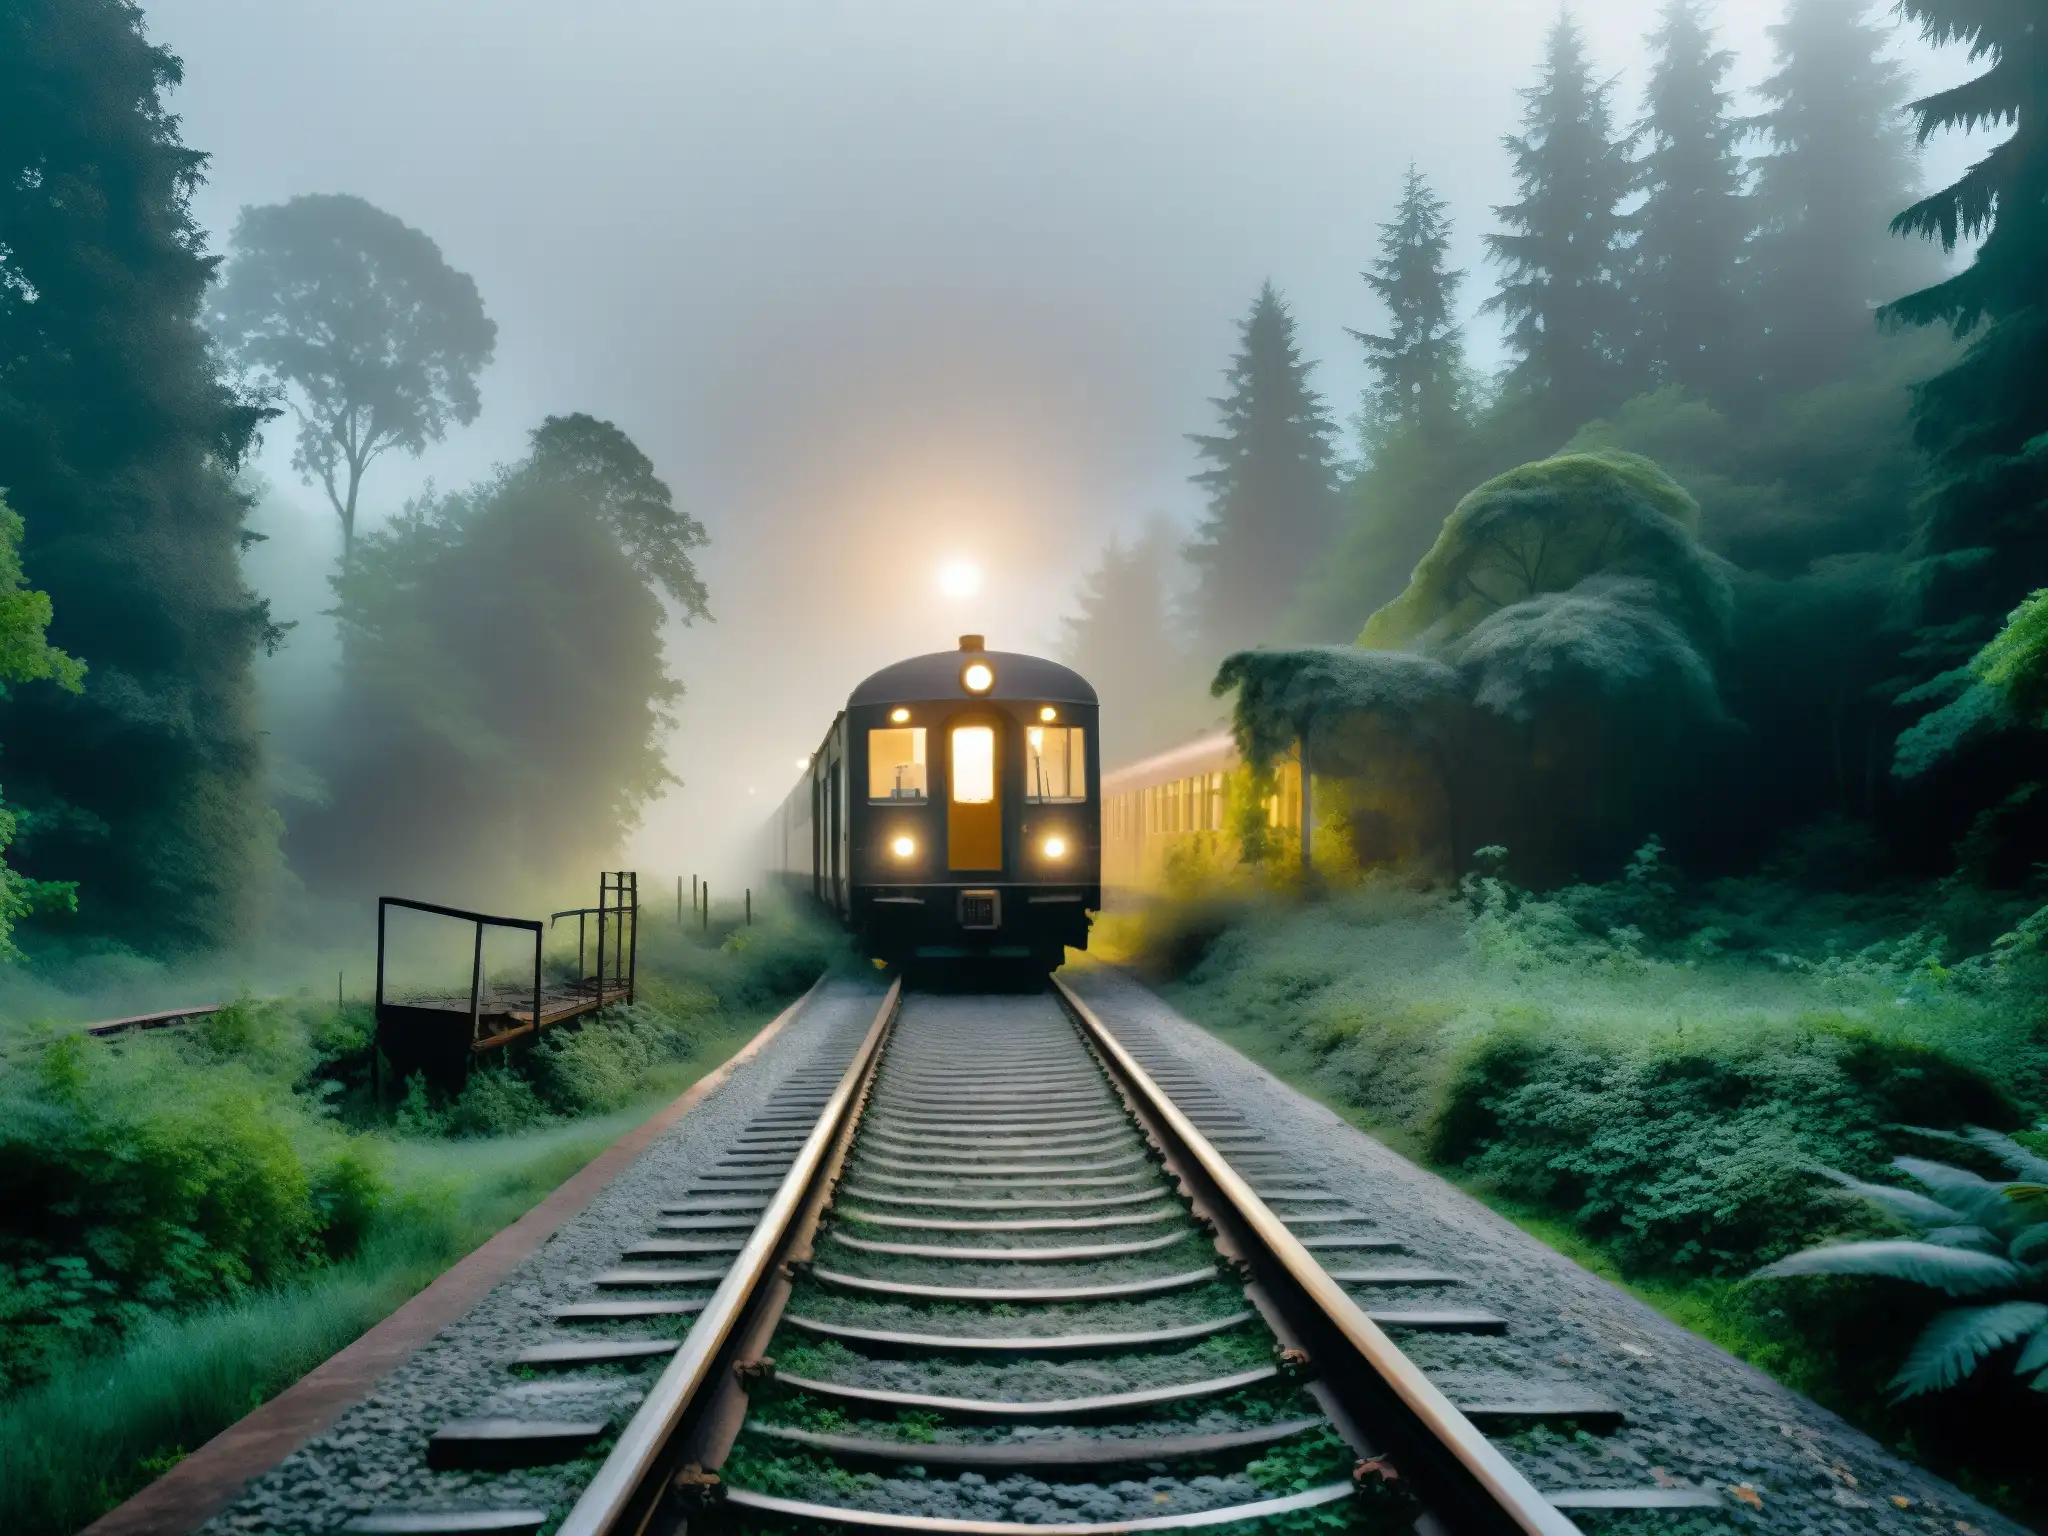 Un paisaje misterioso de vías de tren en la niebla, con una estación abandonada y un tren fantasmal